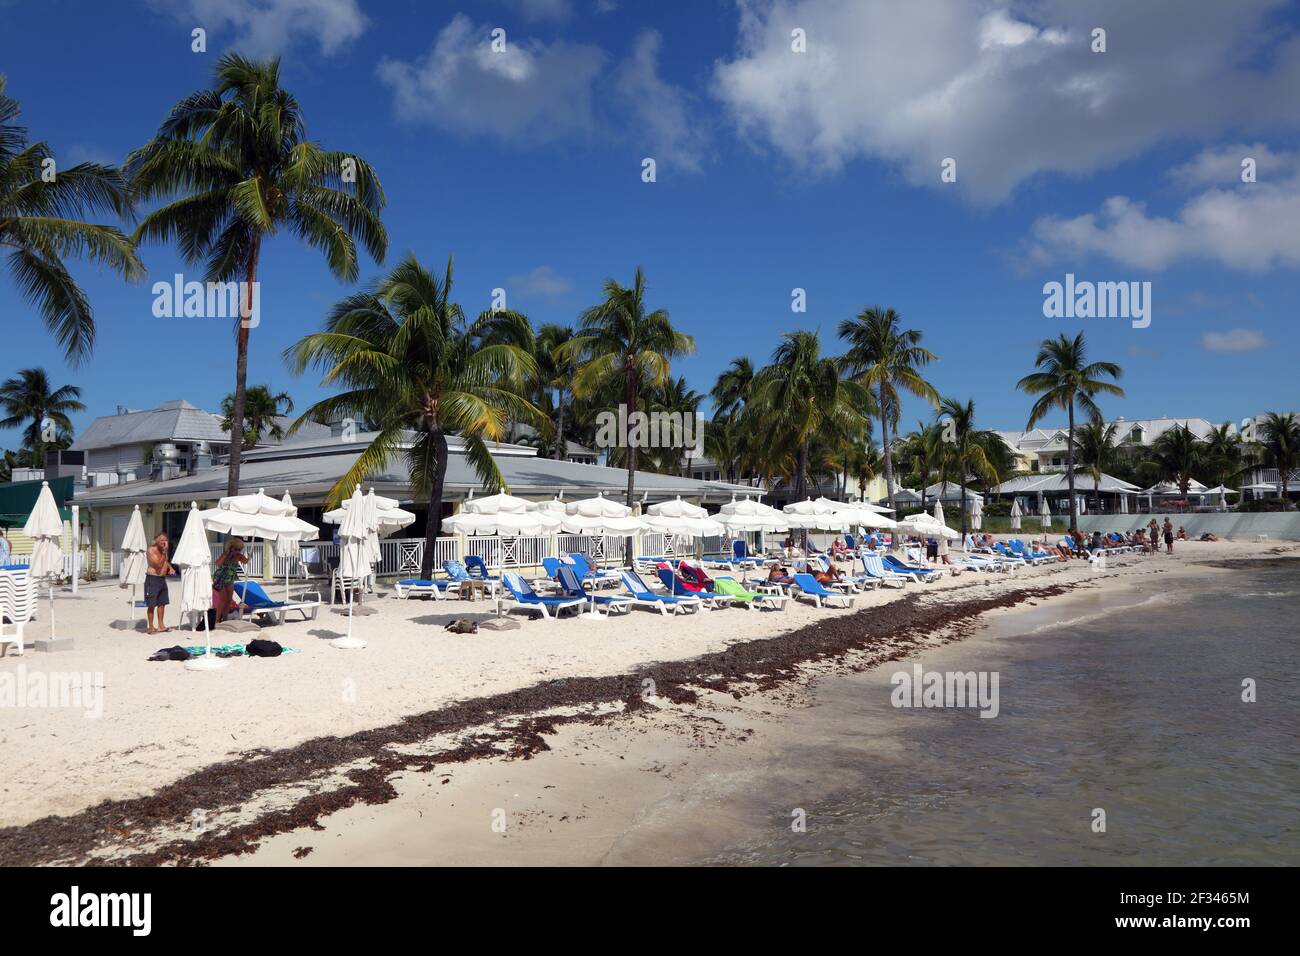 Geographie / Reisen, USA, Florida, Key West, Strand am südlichsten Punkt, Key West, Zusatz-Rights-Clearance-Info-not-available Stockfoto